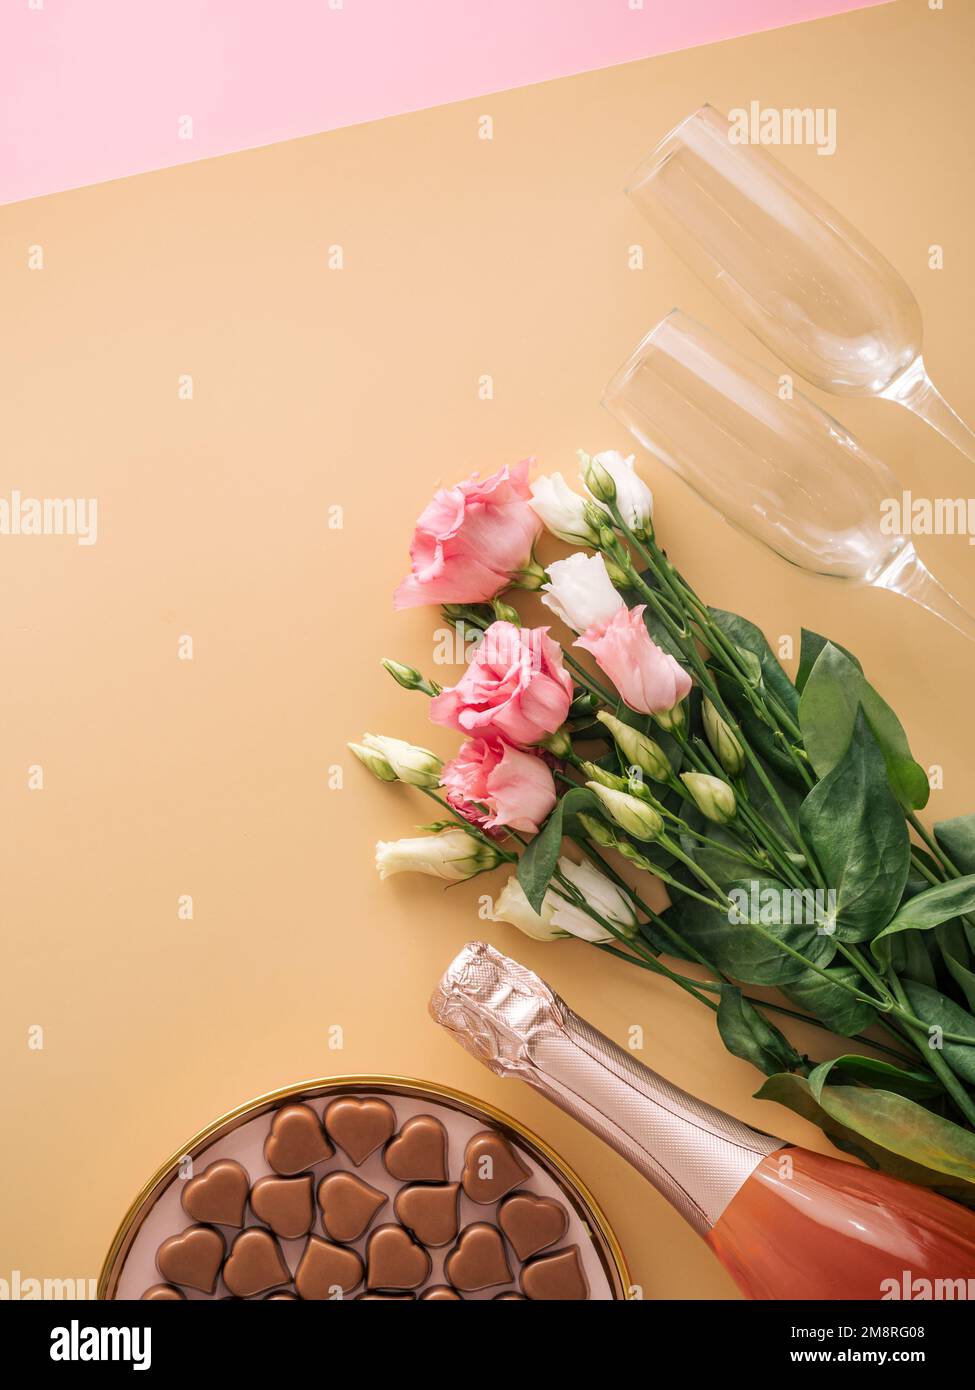 Concept de la Saint-Valentin sur fond jaune pastel. Bouteille de champagne rose, verres, bouqet de fleurs et confiseries romantiques au chocolat en forme de coeur.CopySpace.fond beige Champagne.Topview platlay Banque D'Images